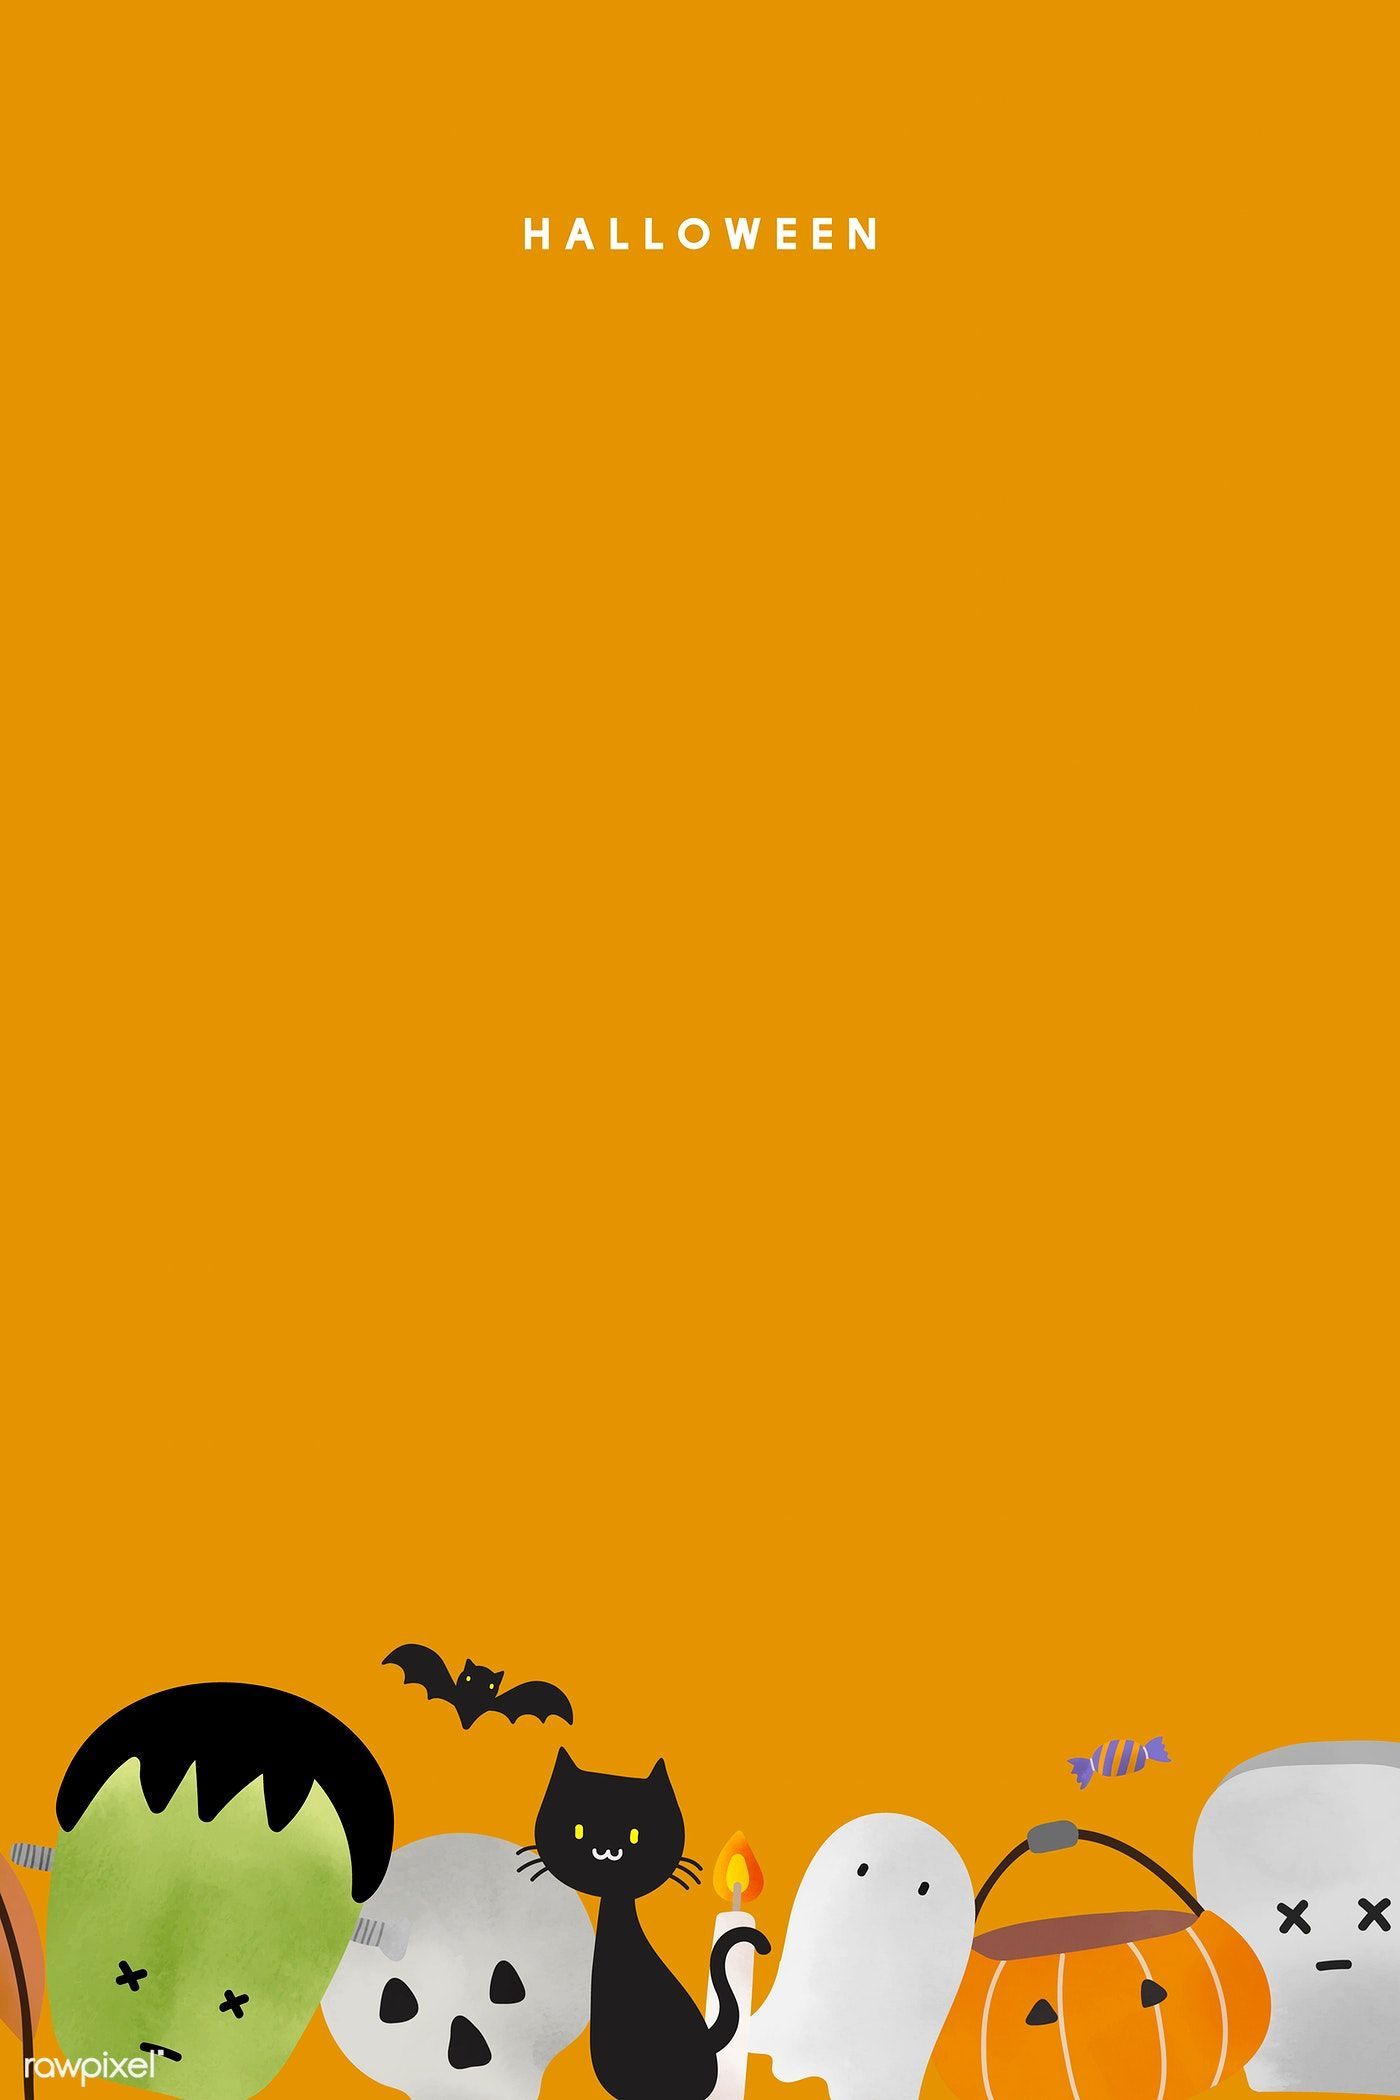 Download premium vector of Cute Halloween background vector. Halloween background, Halloween illustration, Halloween